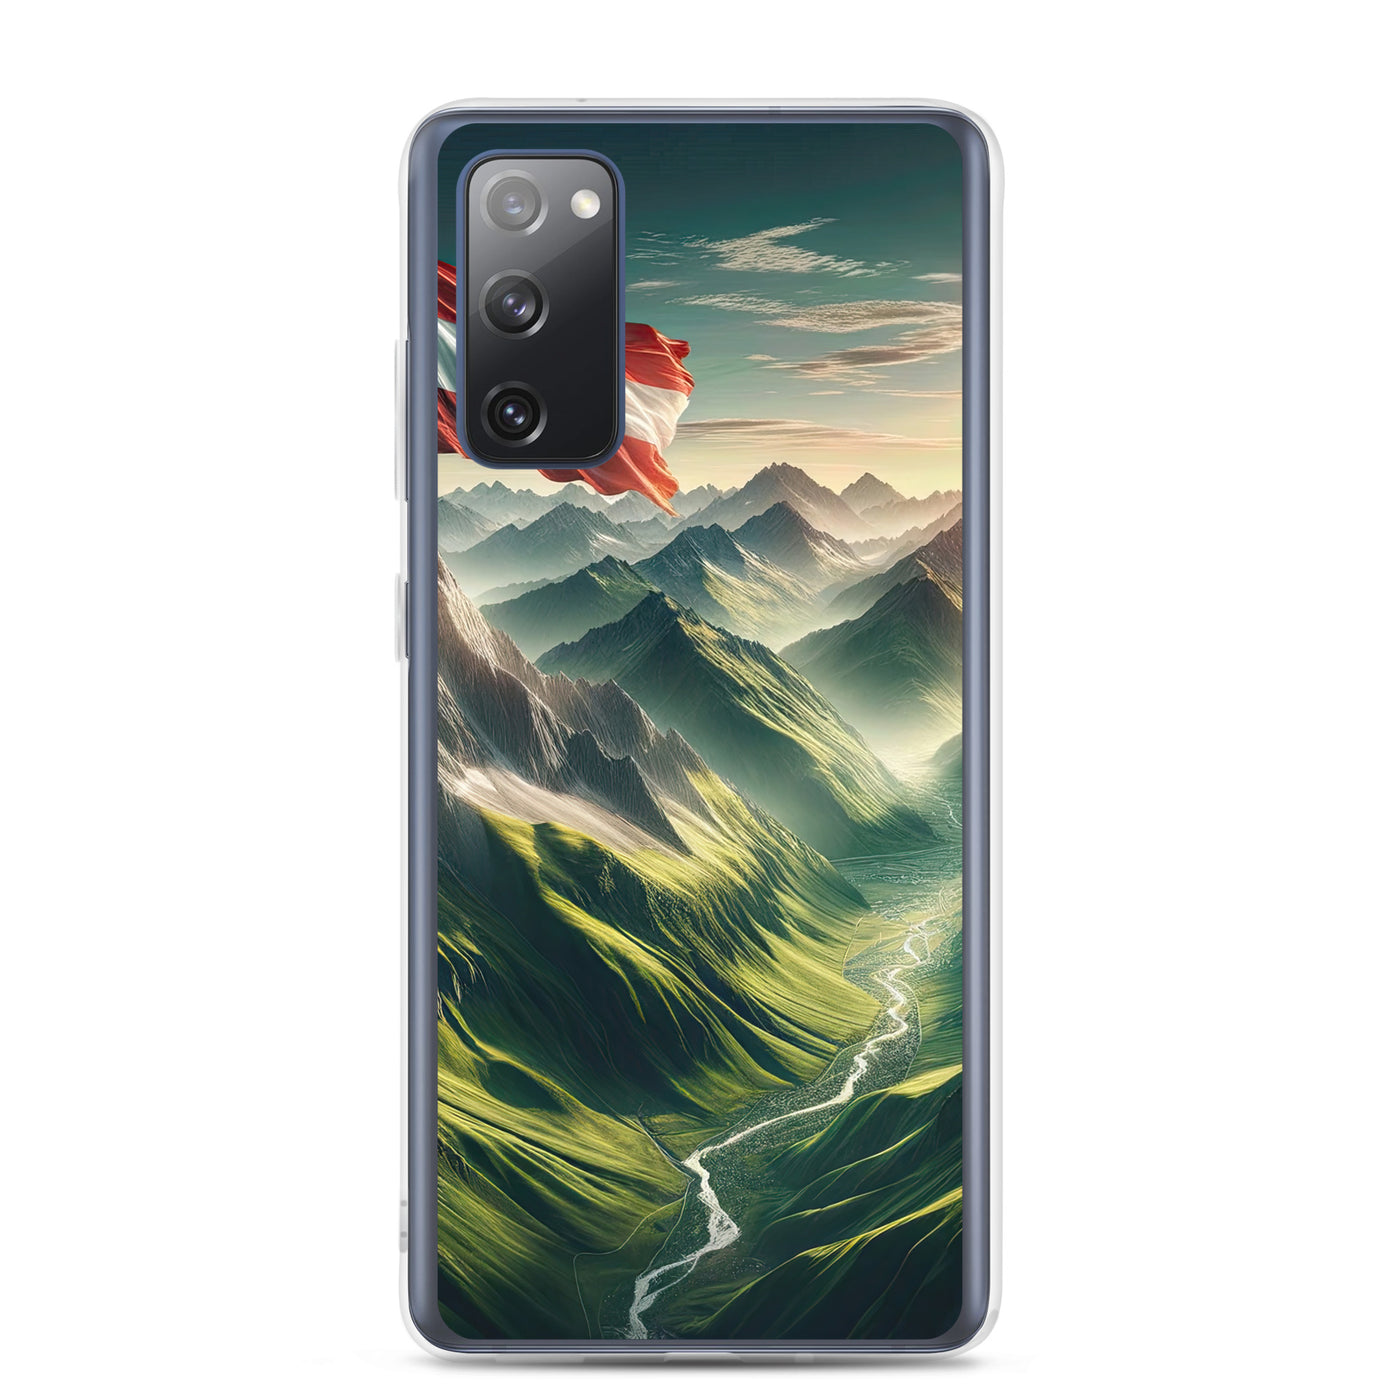 Alpen Gebirge: Fotorealistische Bergfläche mit Österreichischer Flagge - Samsung Schutzhülle (durchsichtig) berge xxx yyy zzz Samsung Galaxy S20 FE